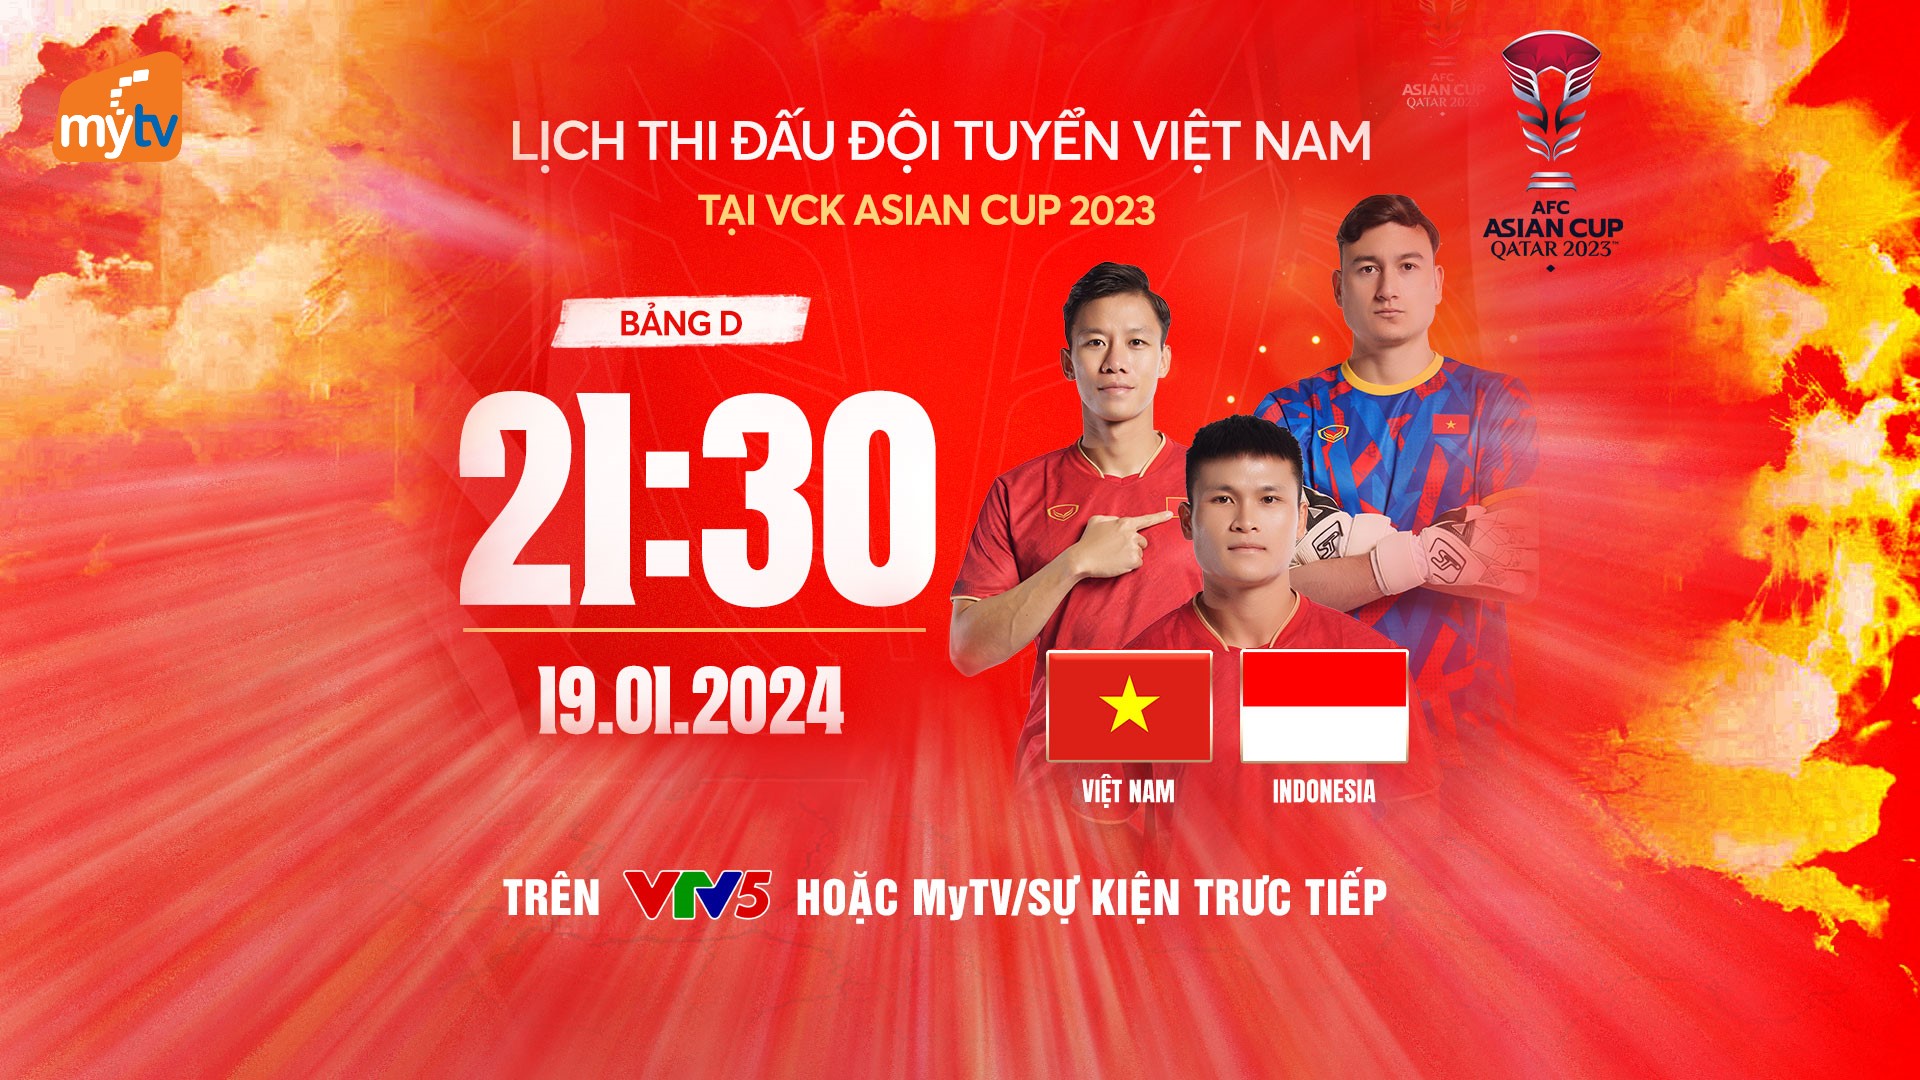 Trực tiếp Asian Cup 2023 trên MyTV